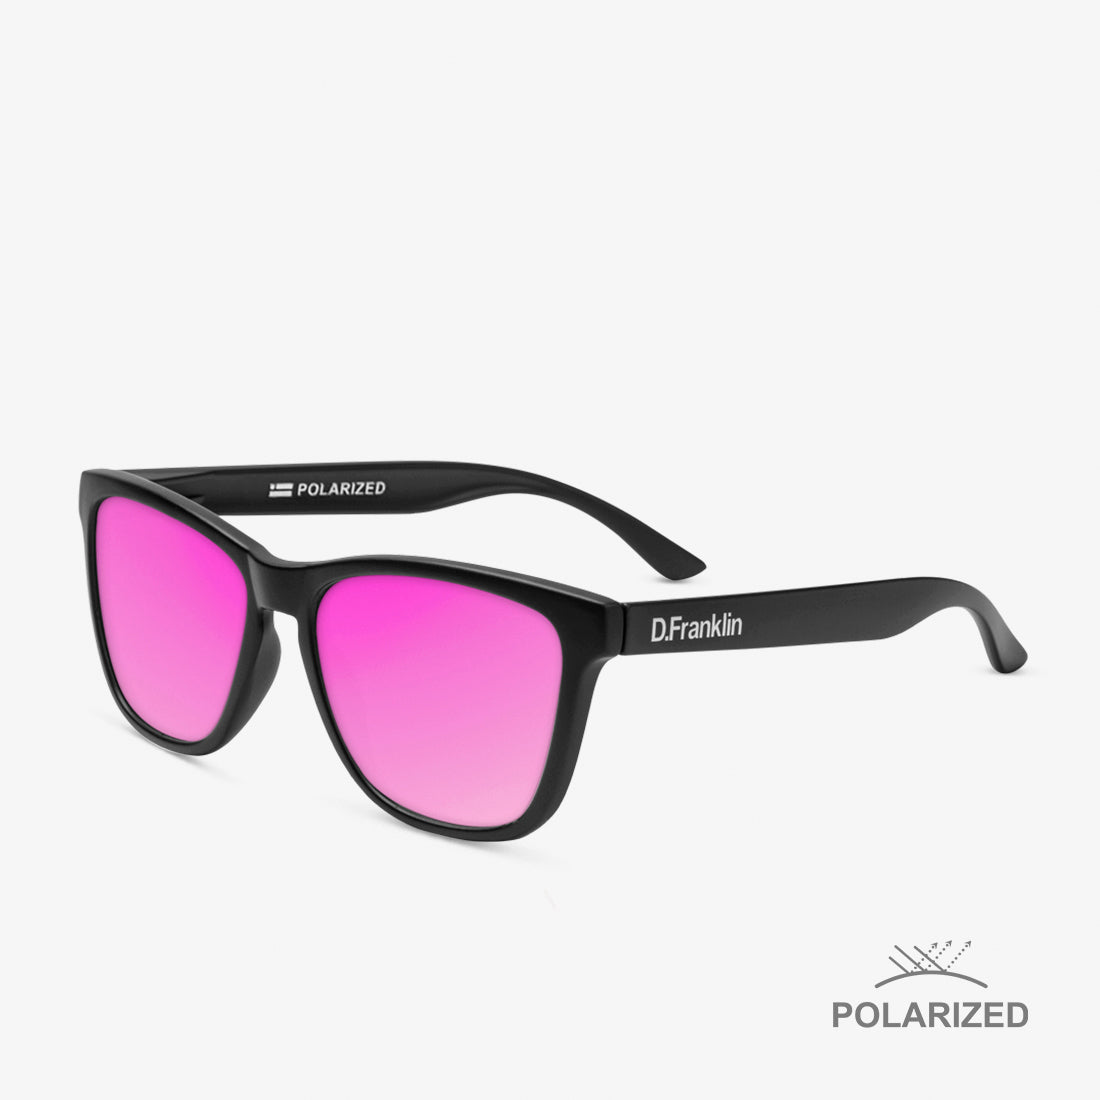 Roosevelt Black Matte / Pink Polarized